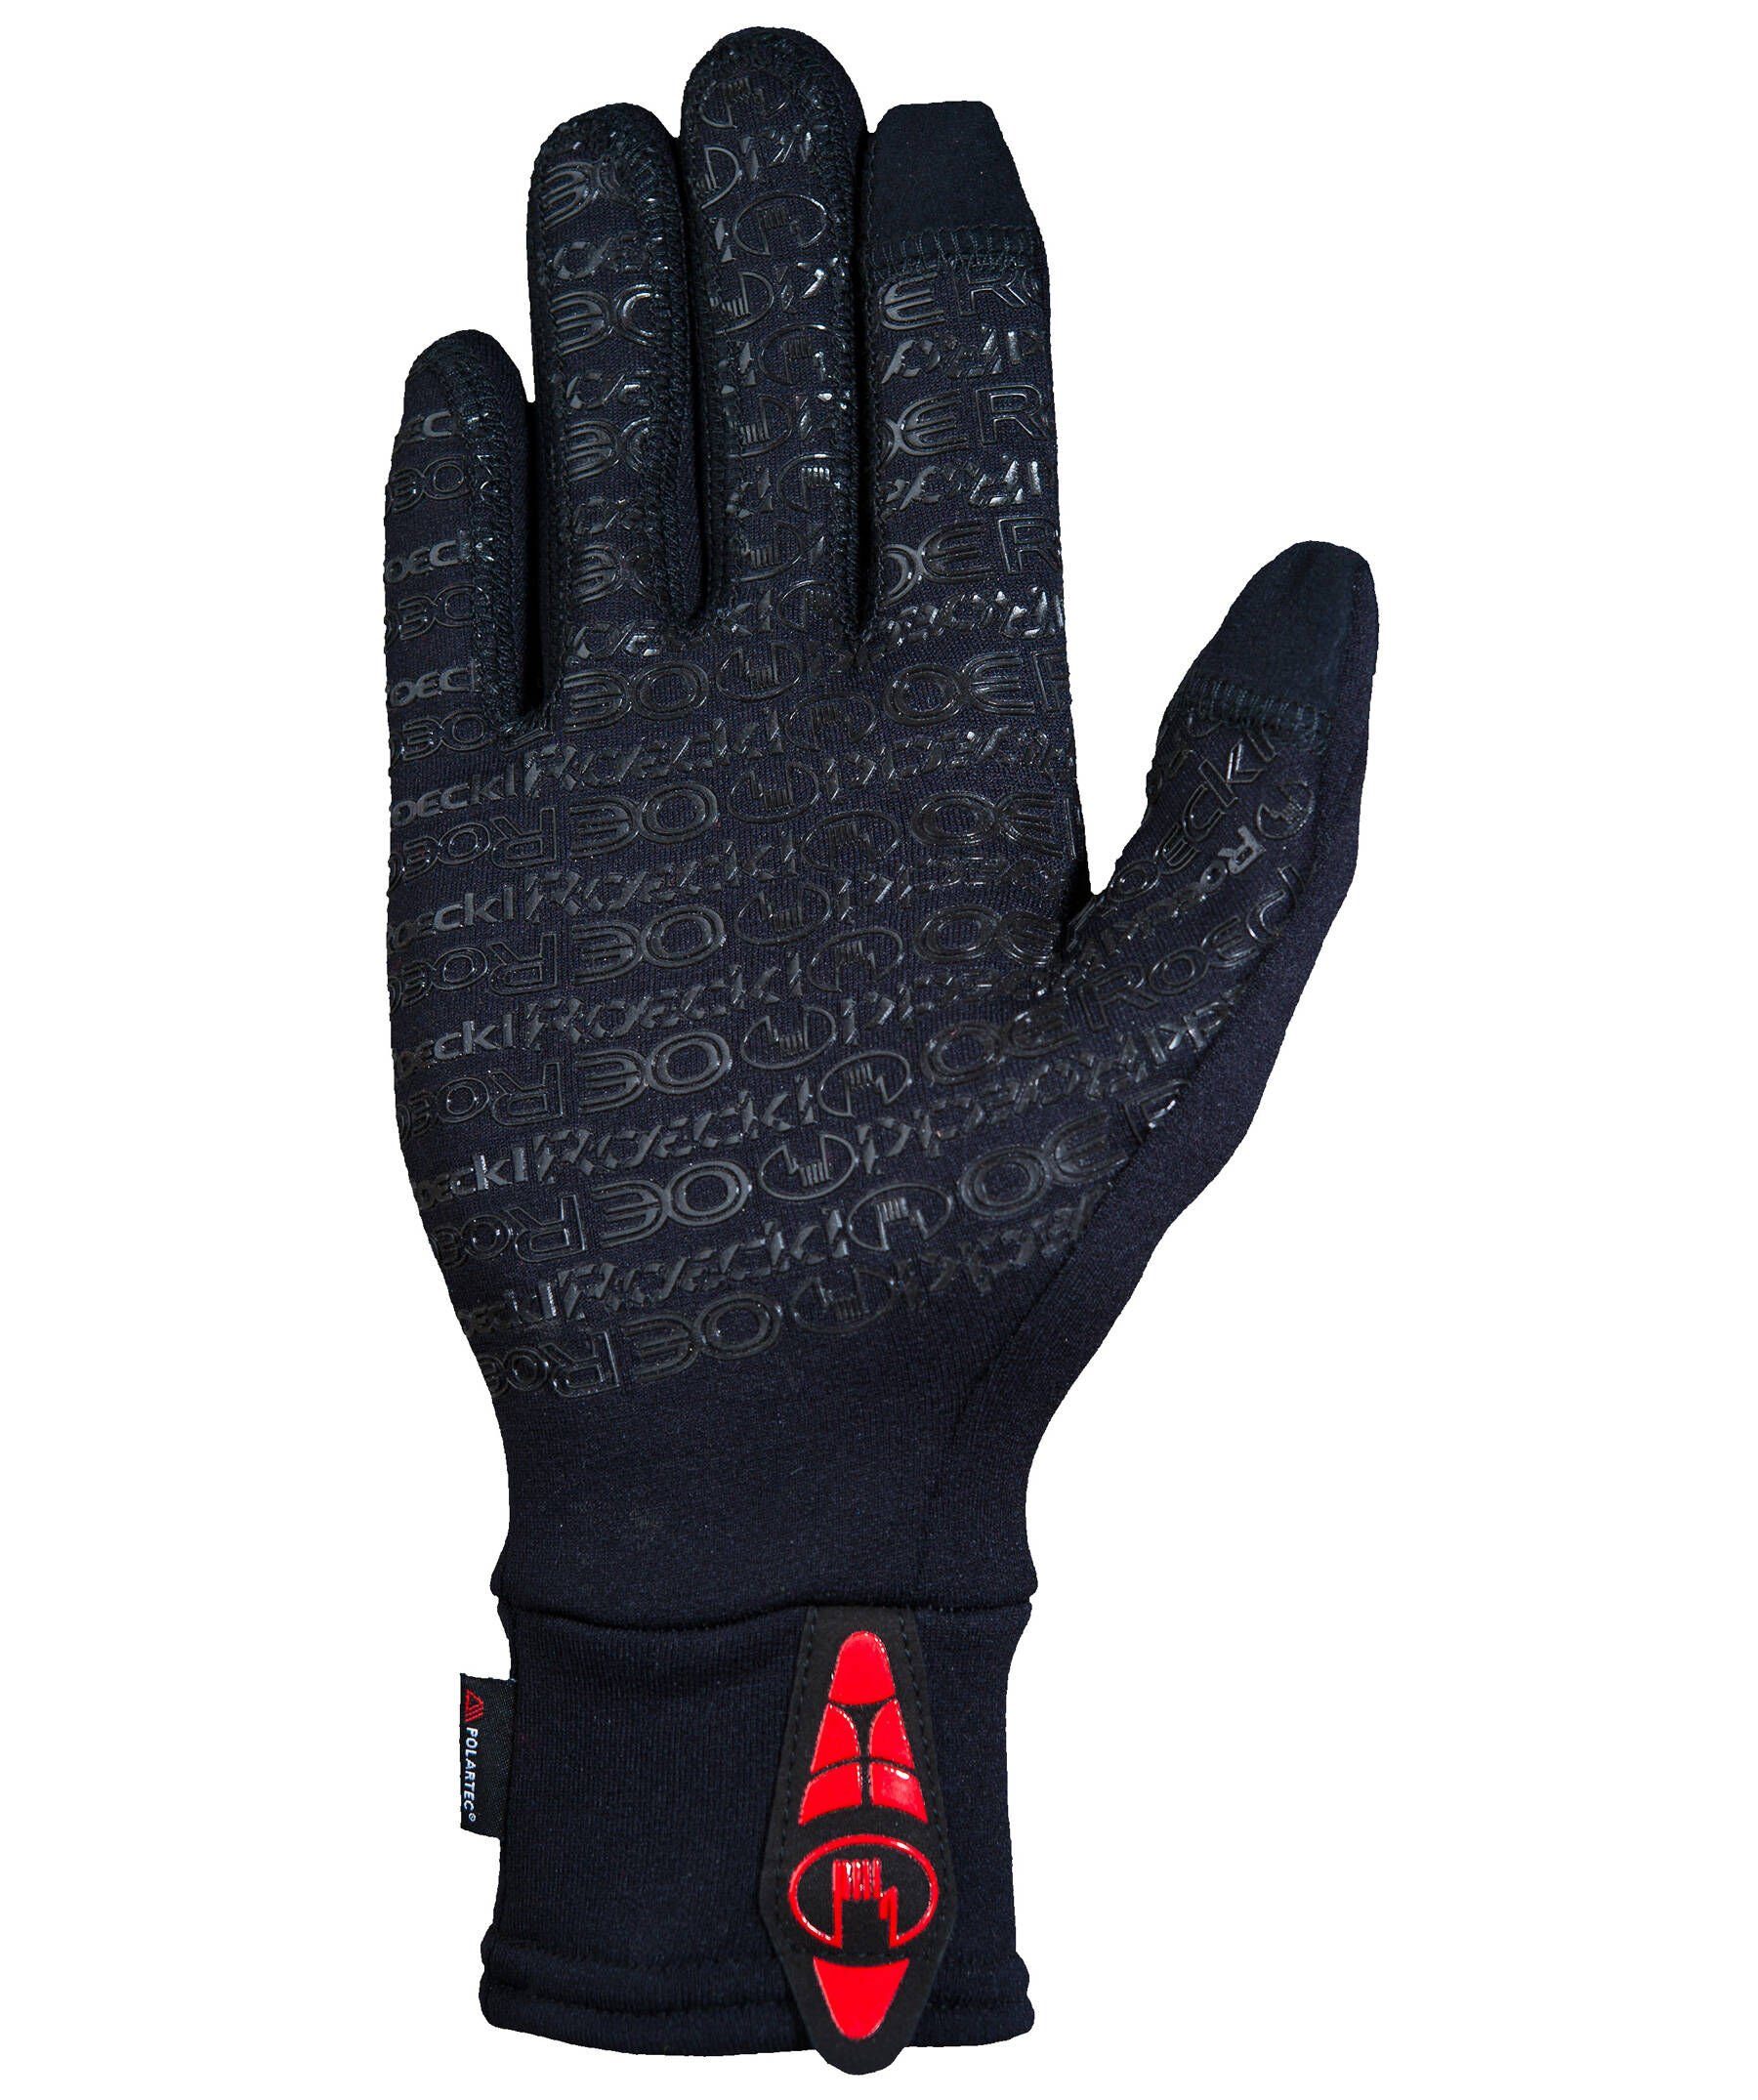 Roeckl SPORTS Multisporthandschuhe Outdoor-Handschuh (200) "Kailash" schwarz